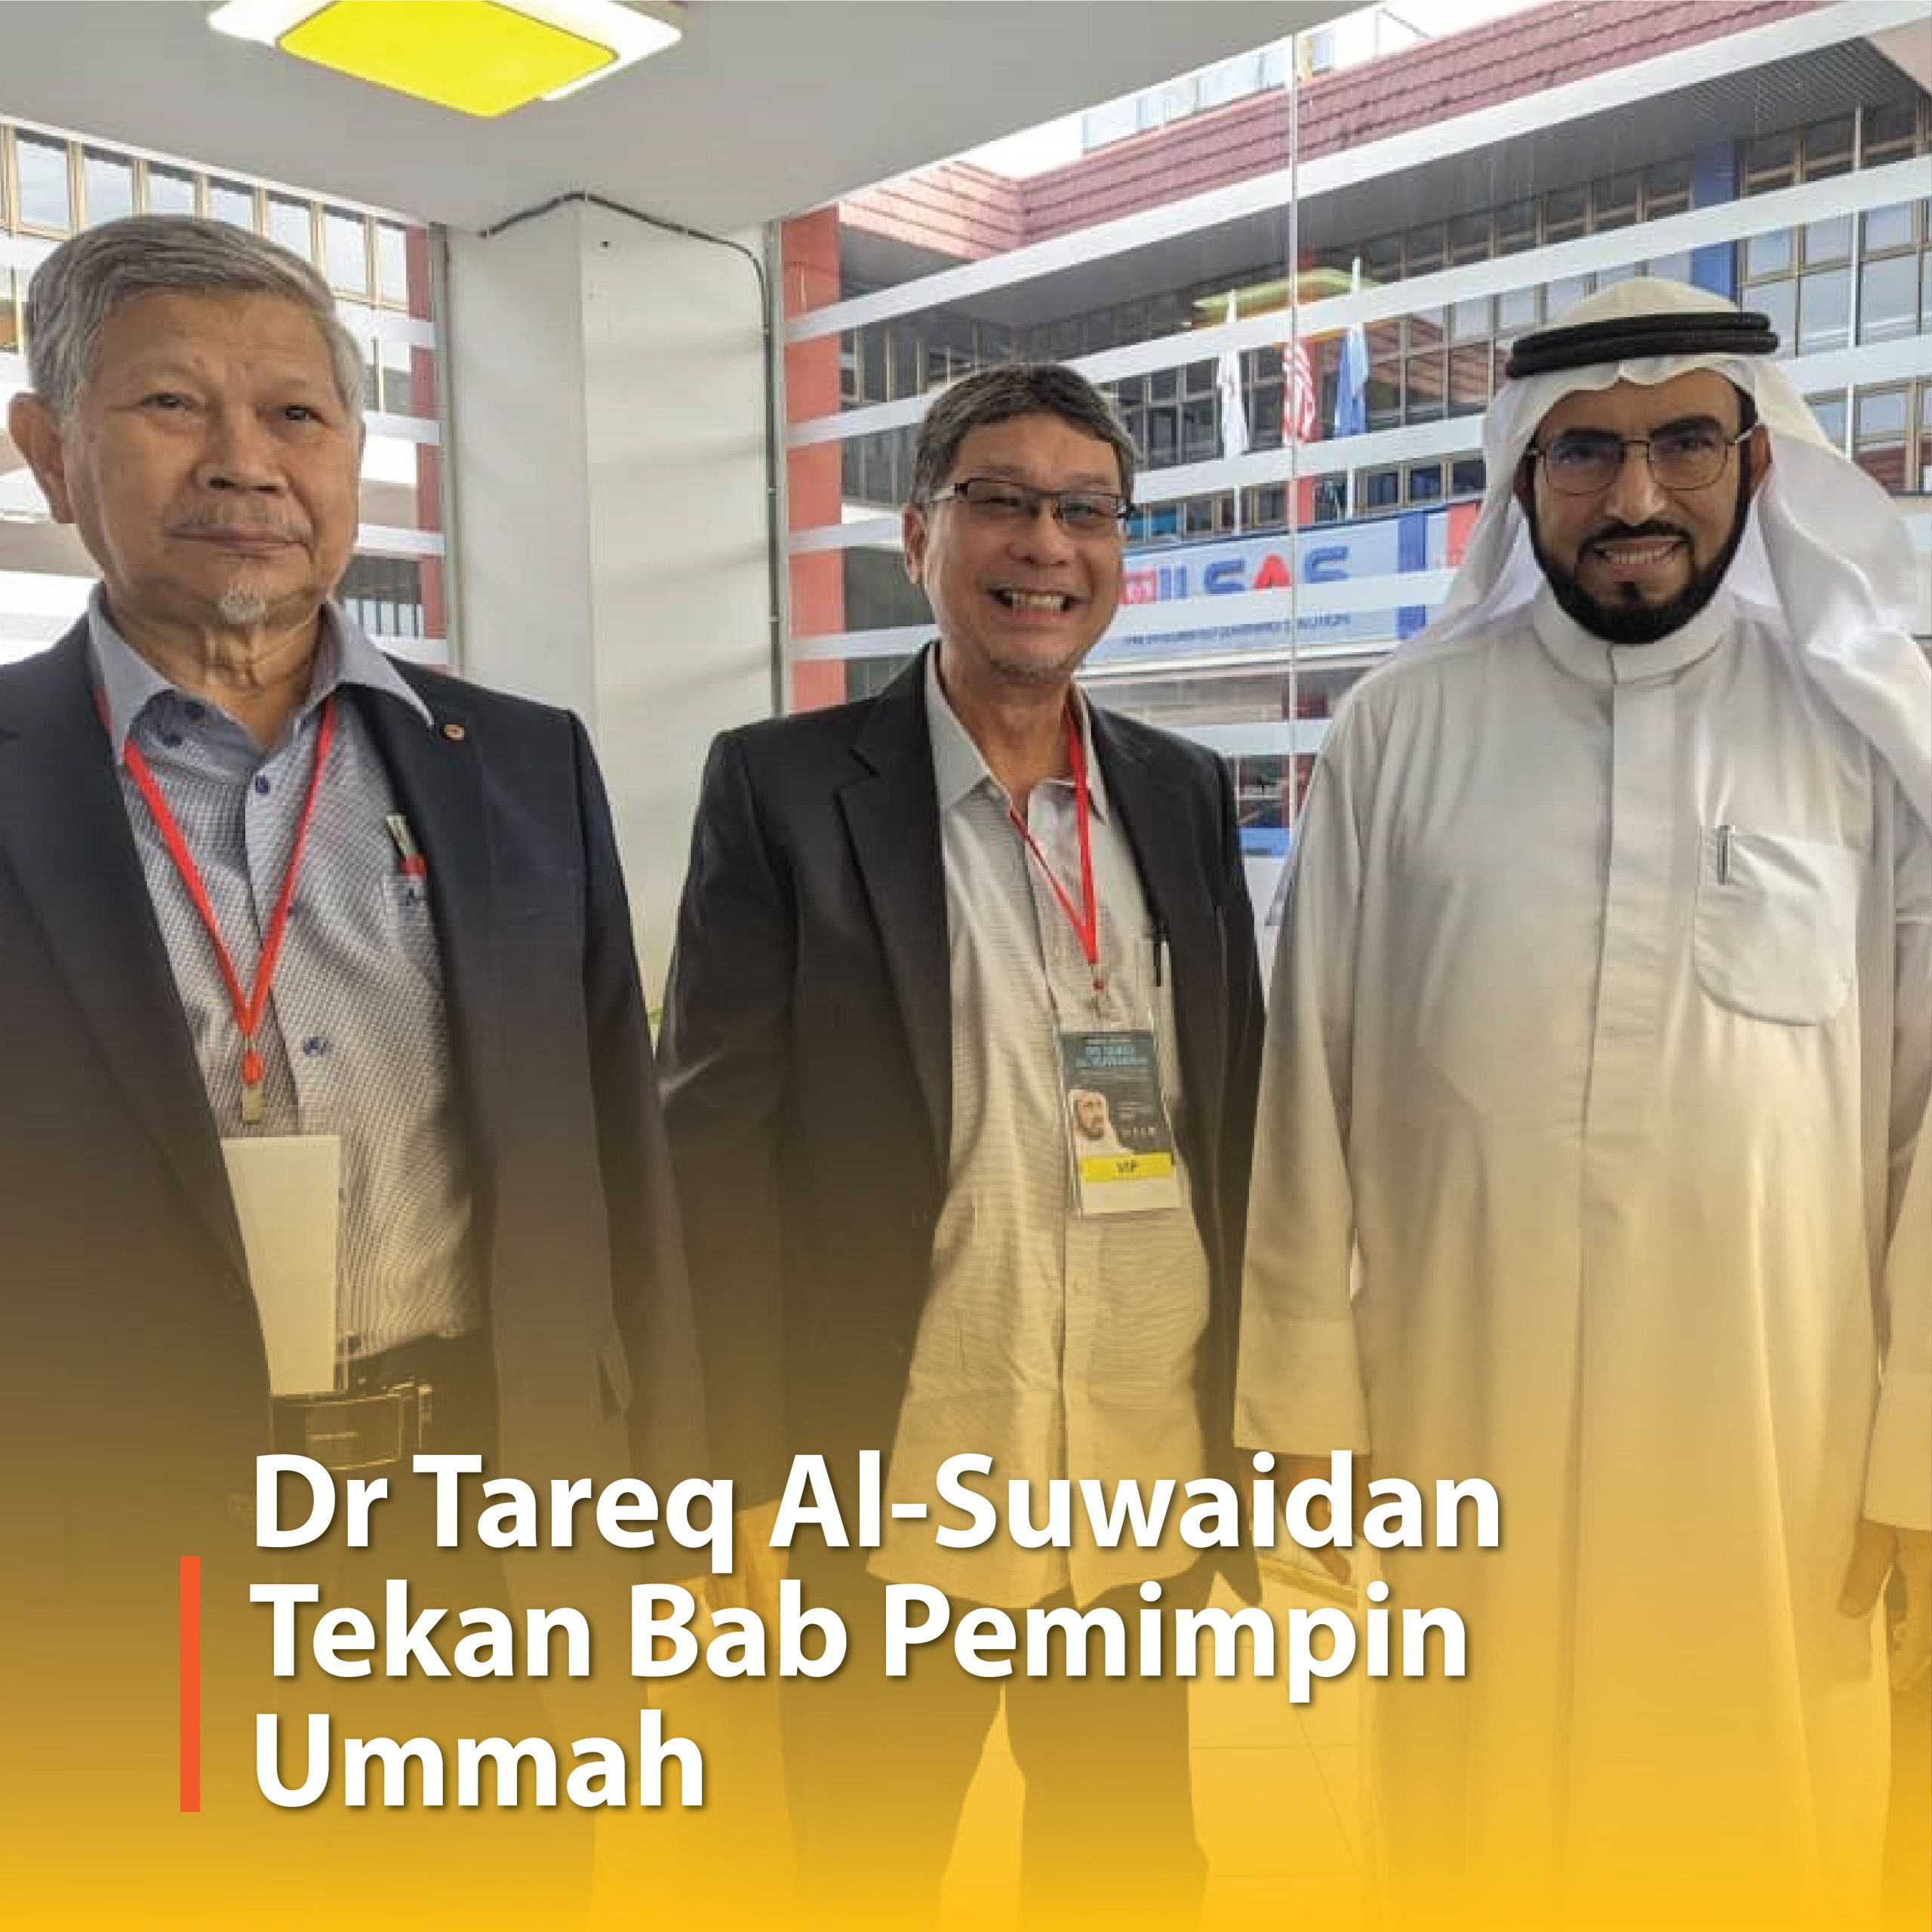 Dr Tareq Al-Suwaidan Tekan Bab Pemimpin Ummah